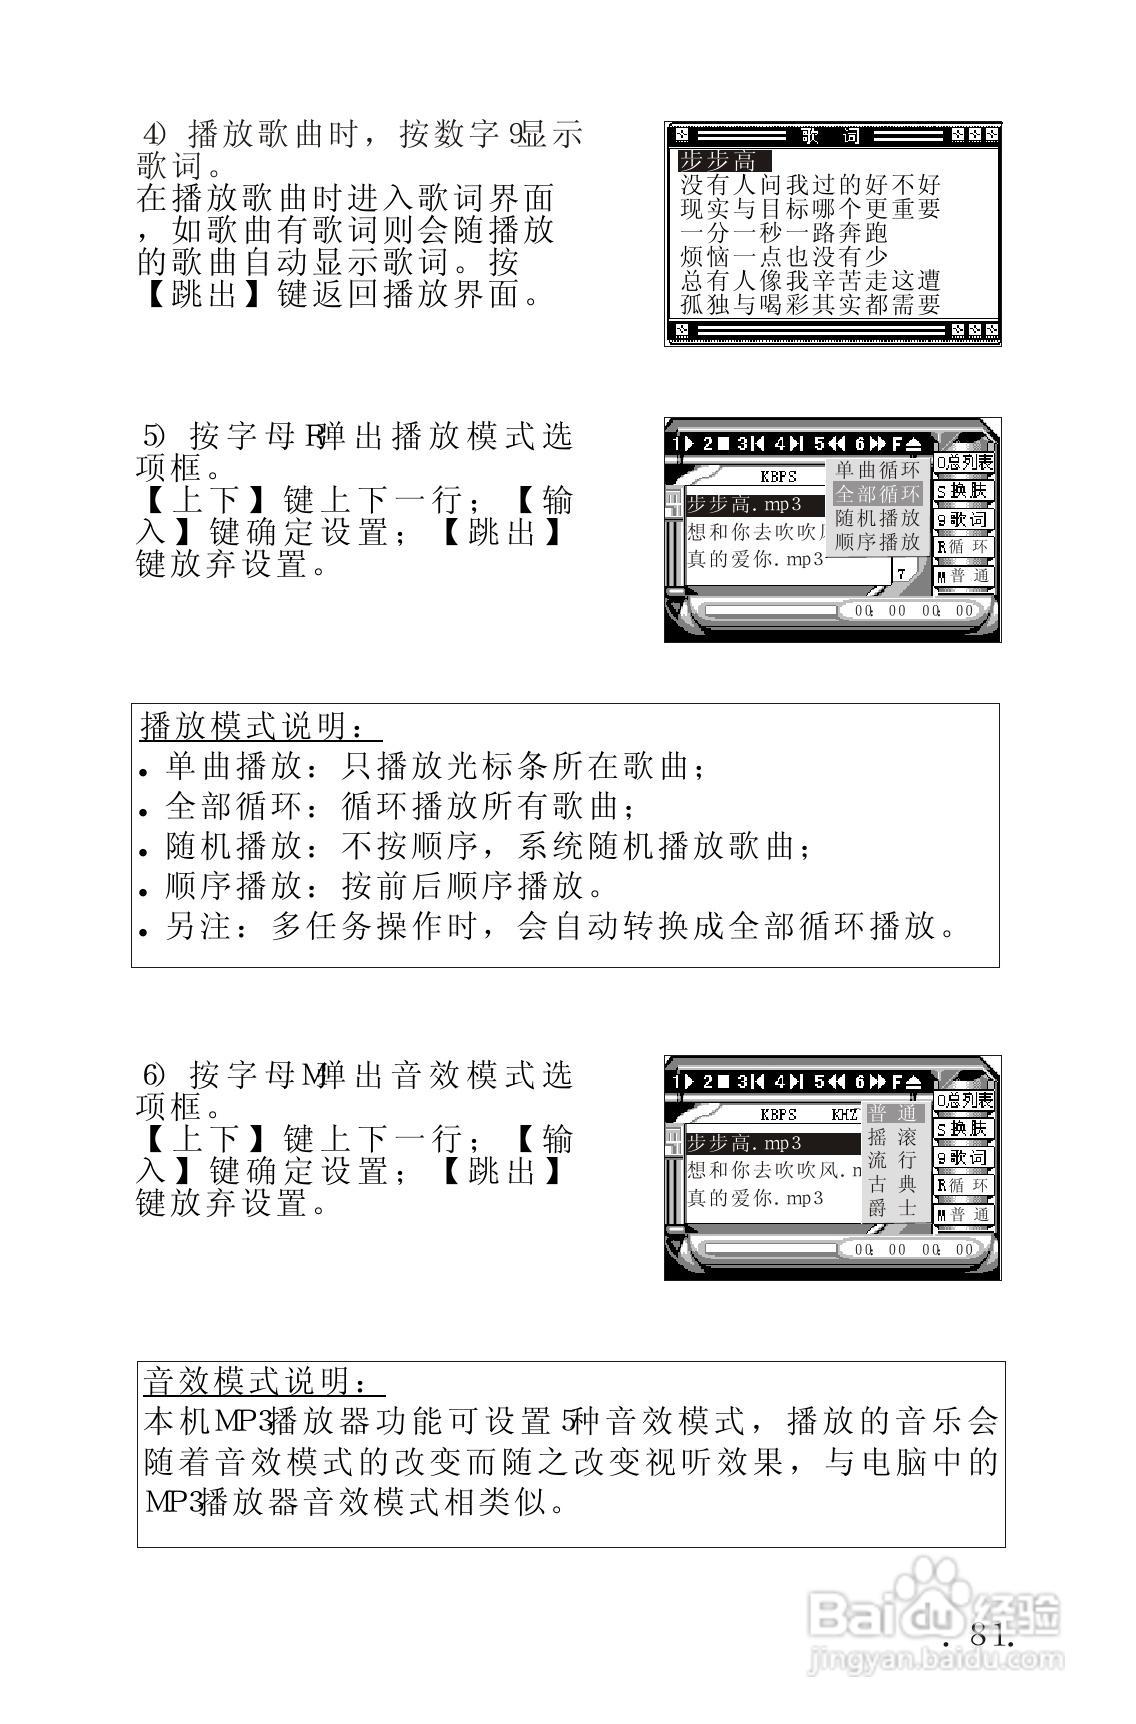 telegraph中文设置、telegreat苹果怎么改中文版